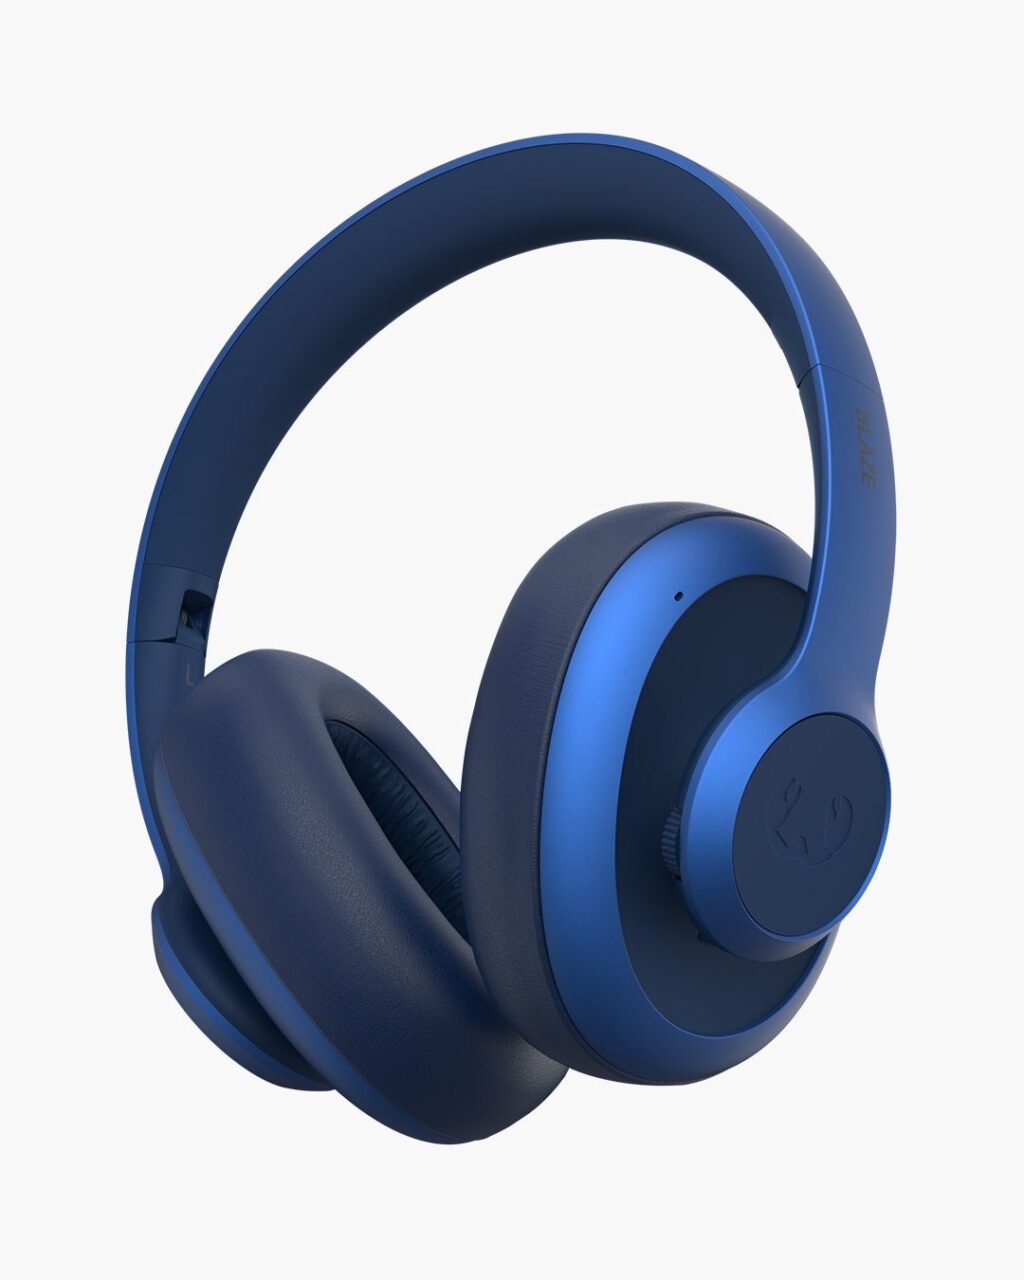 Niebieskie, bezprzewodowe słuchawki nauszne z mikrofonem i pokrętłem sterującym na muszli.